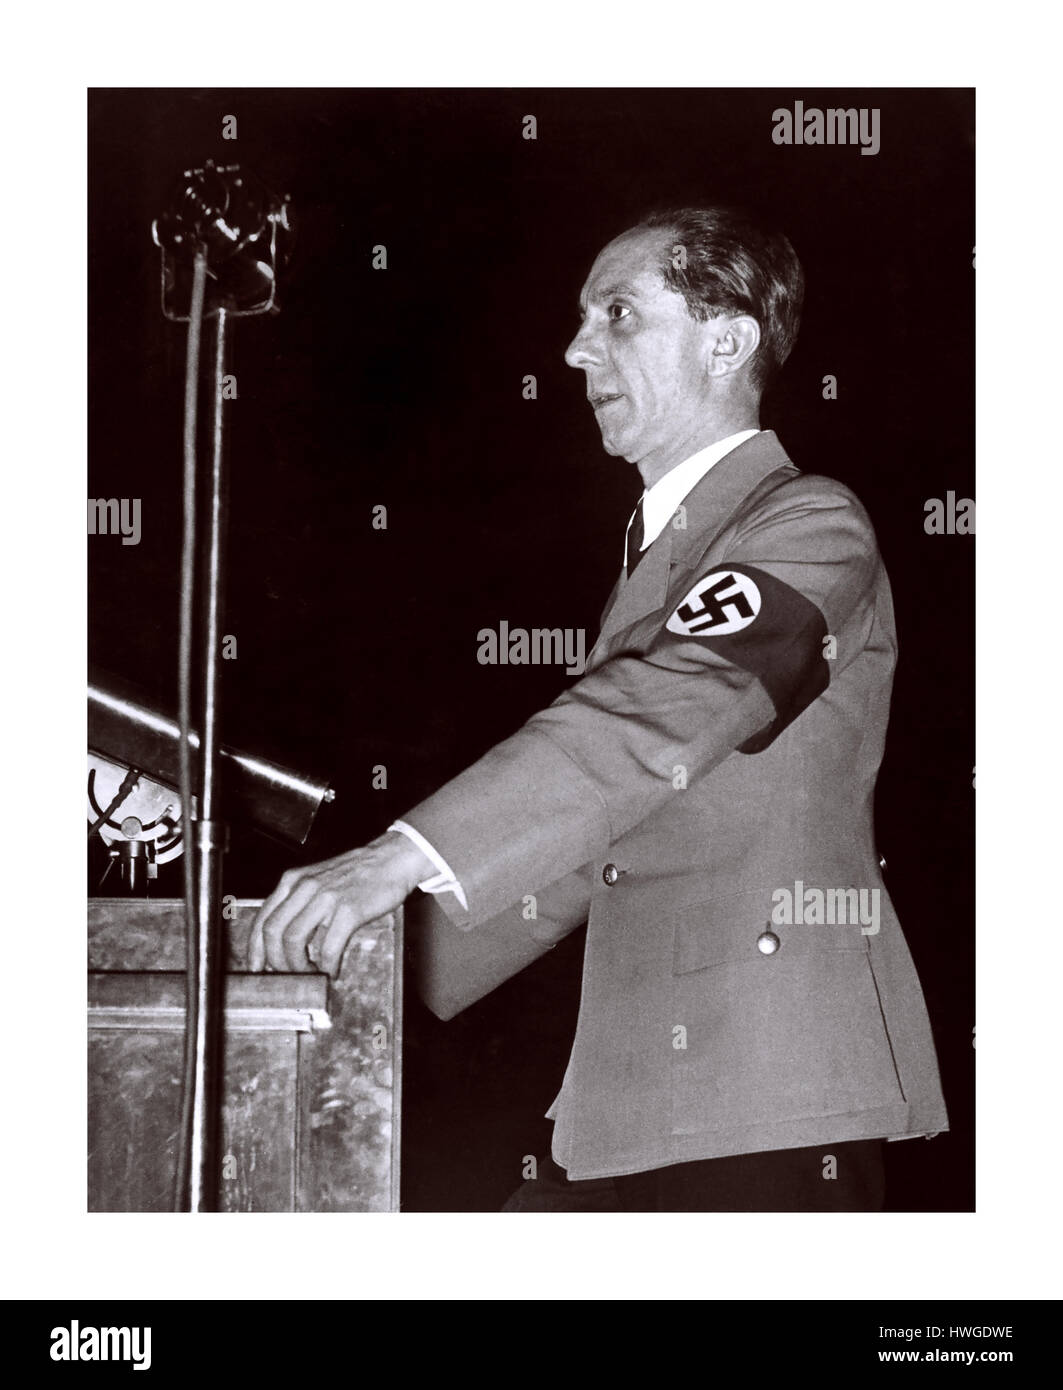 Joseph Goebbels wearing NSDAP uniform with swastika armband 1930's Stock Photo